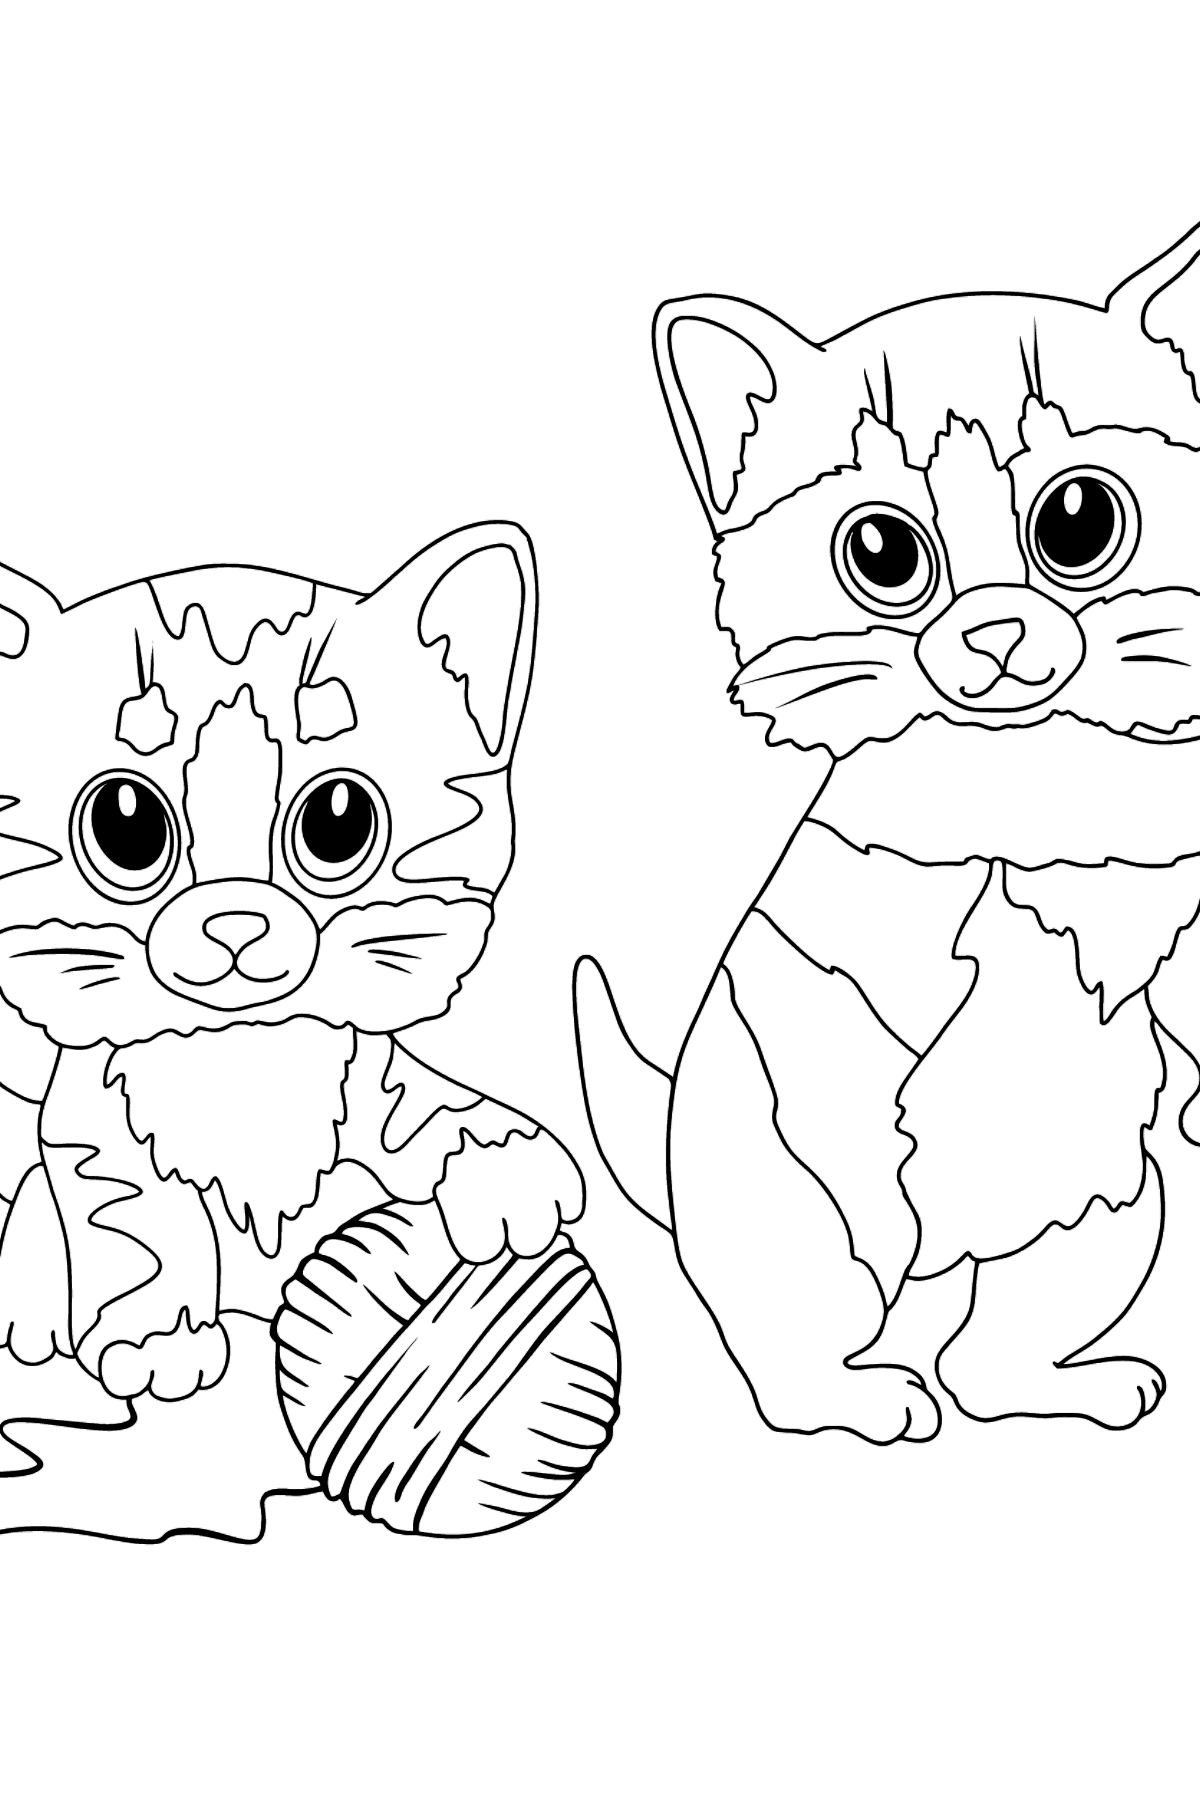 Målarbild roliga kattungar (svår) - Målarbilder För barn